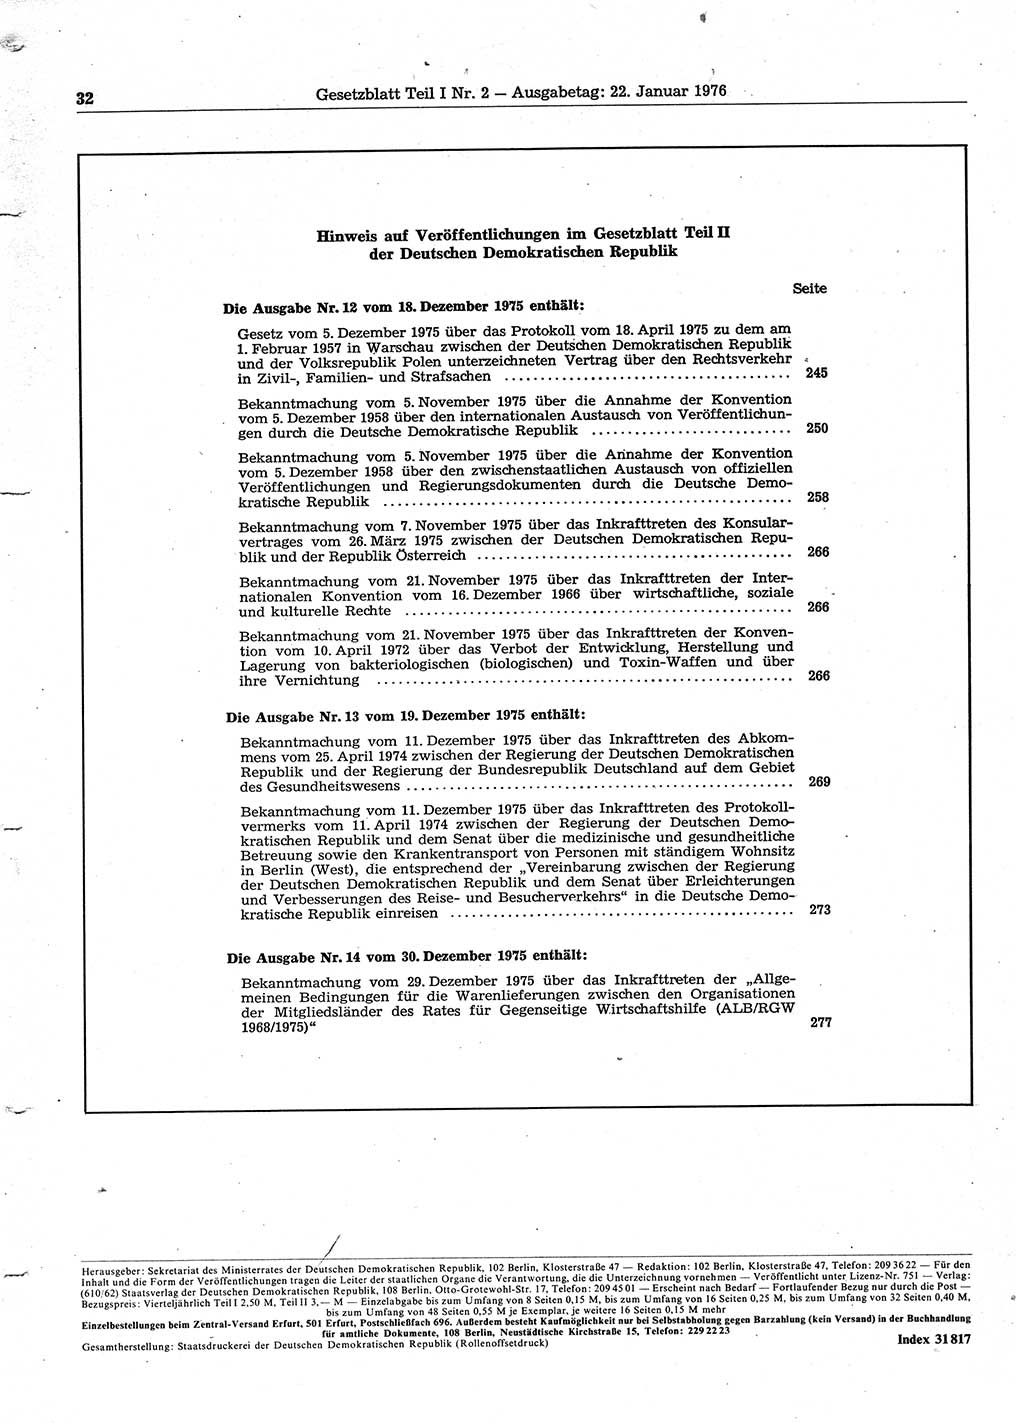 Gesetzblatt (GBl.) der Deutschen Demokratischen Republik (DDR) Teil Ⅰ 1976, Seite 32 (GBl. DDR Ⅰ 1976, S. 32)